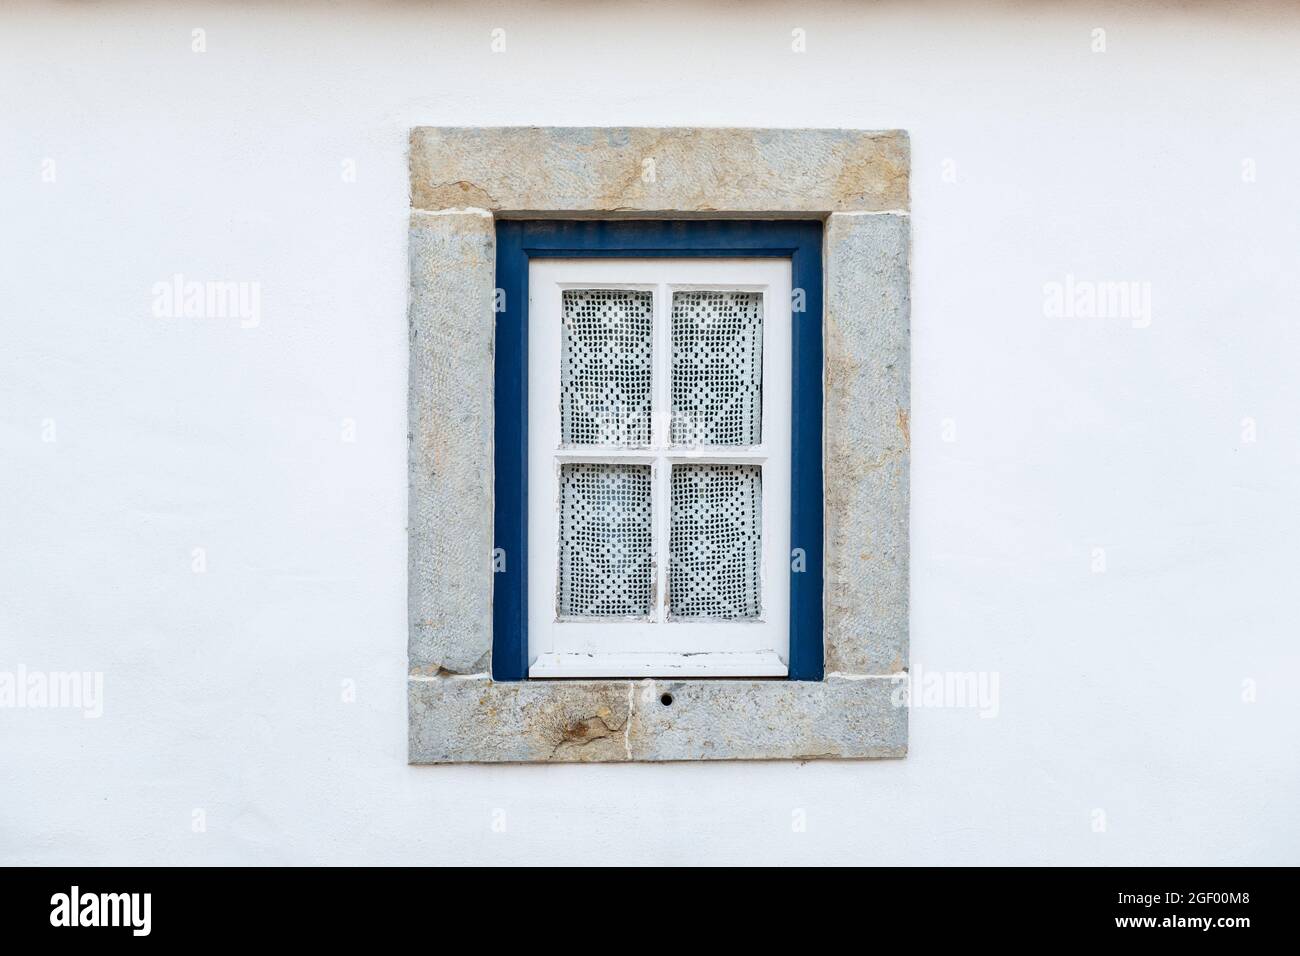 Detalle de una ventana tradicional en una fachada blanca de una casa, con cortinas de ganchillo, en Portugal. Foto de stock